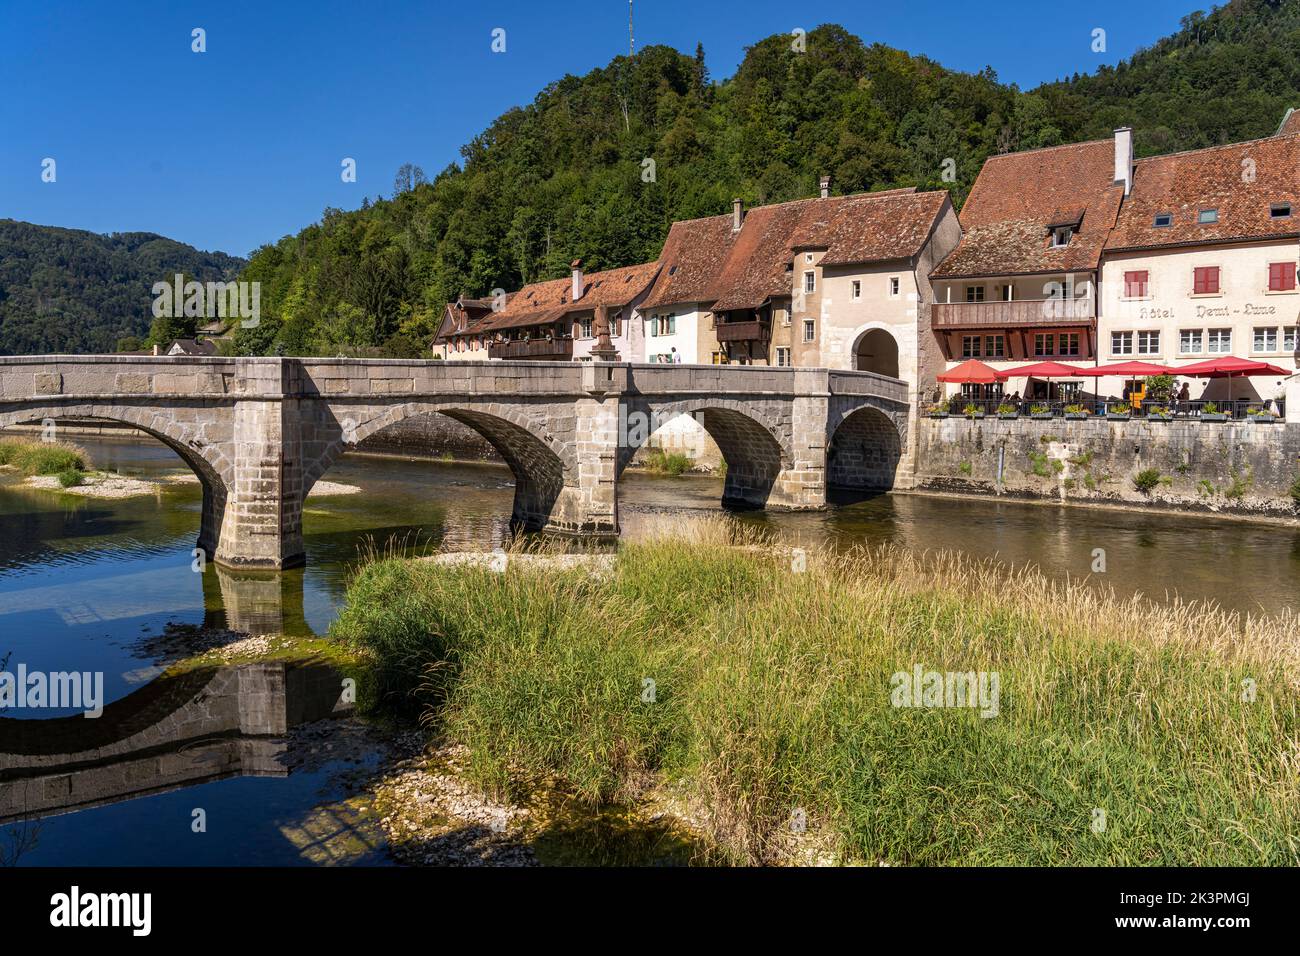 St-Jean Brücke und die historische Altstadt von Saint-Ursanne und der Fluss Doubs, Schweiz, Europa |   Pont Saint-Jean bridge and the historic old tow Stock Photo